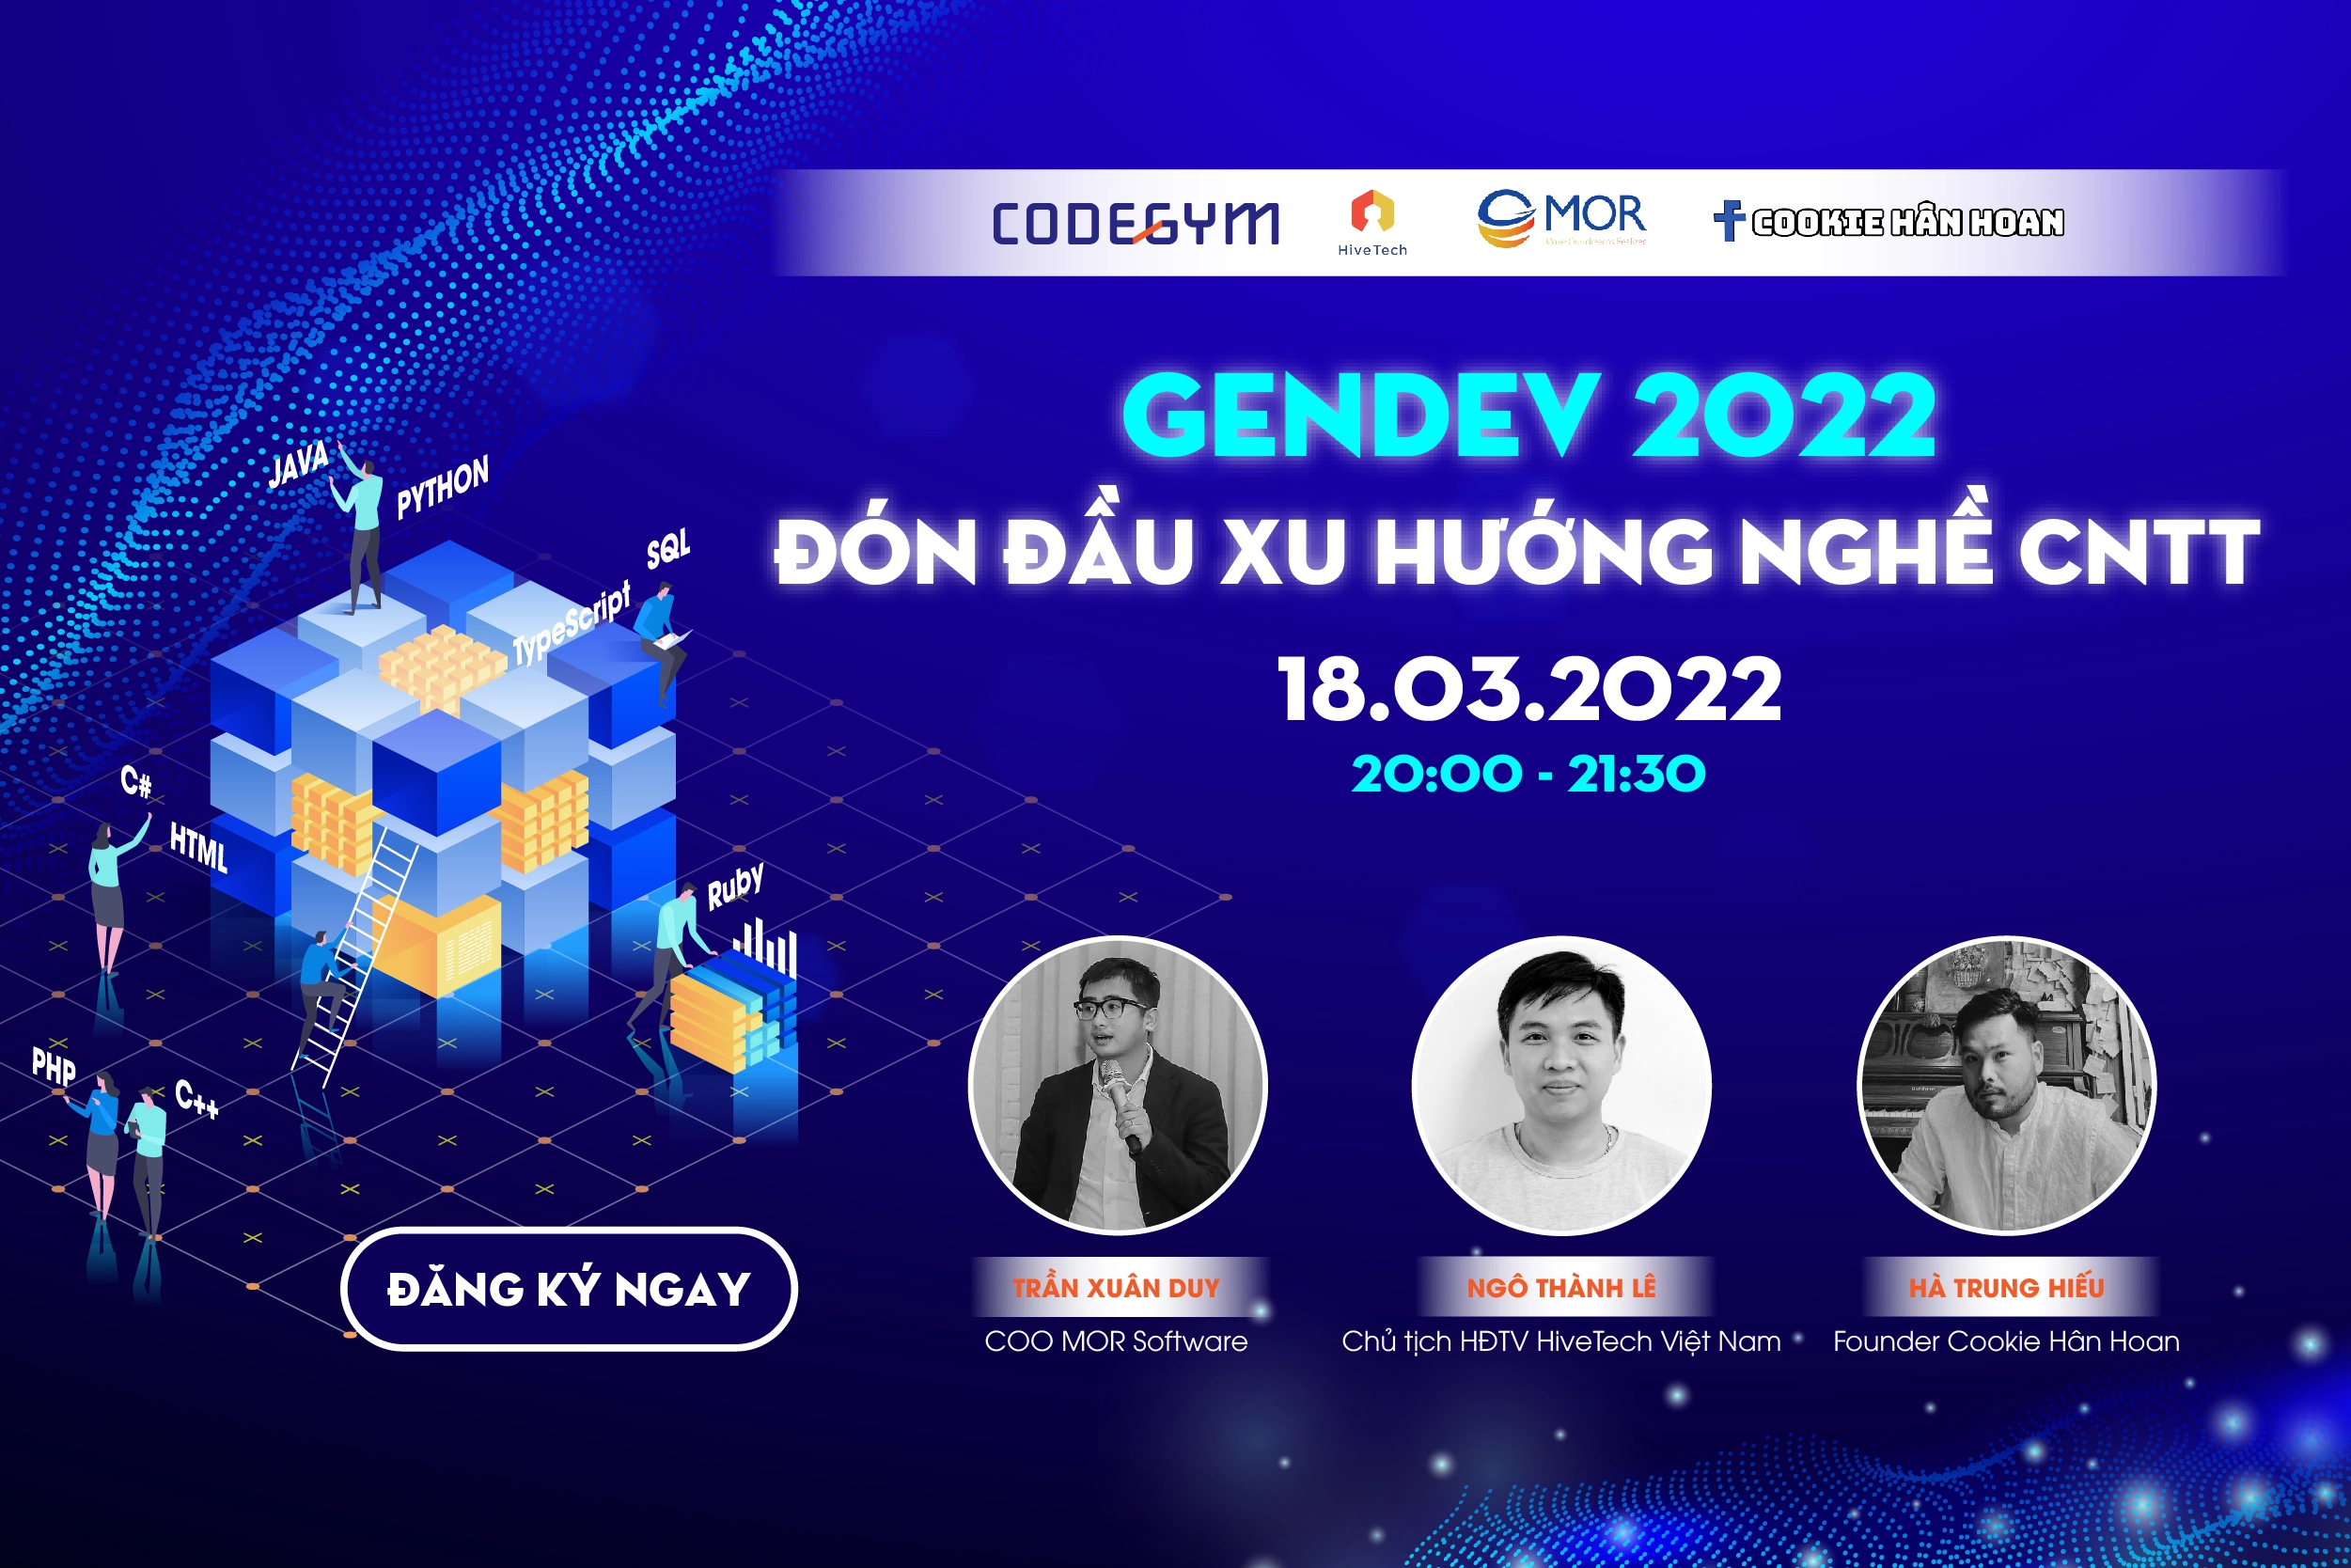 GenDev 2022 - Đón đầu xu hướng nghề CNTT